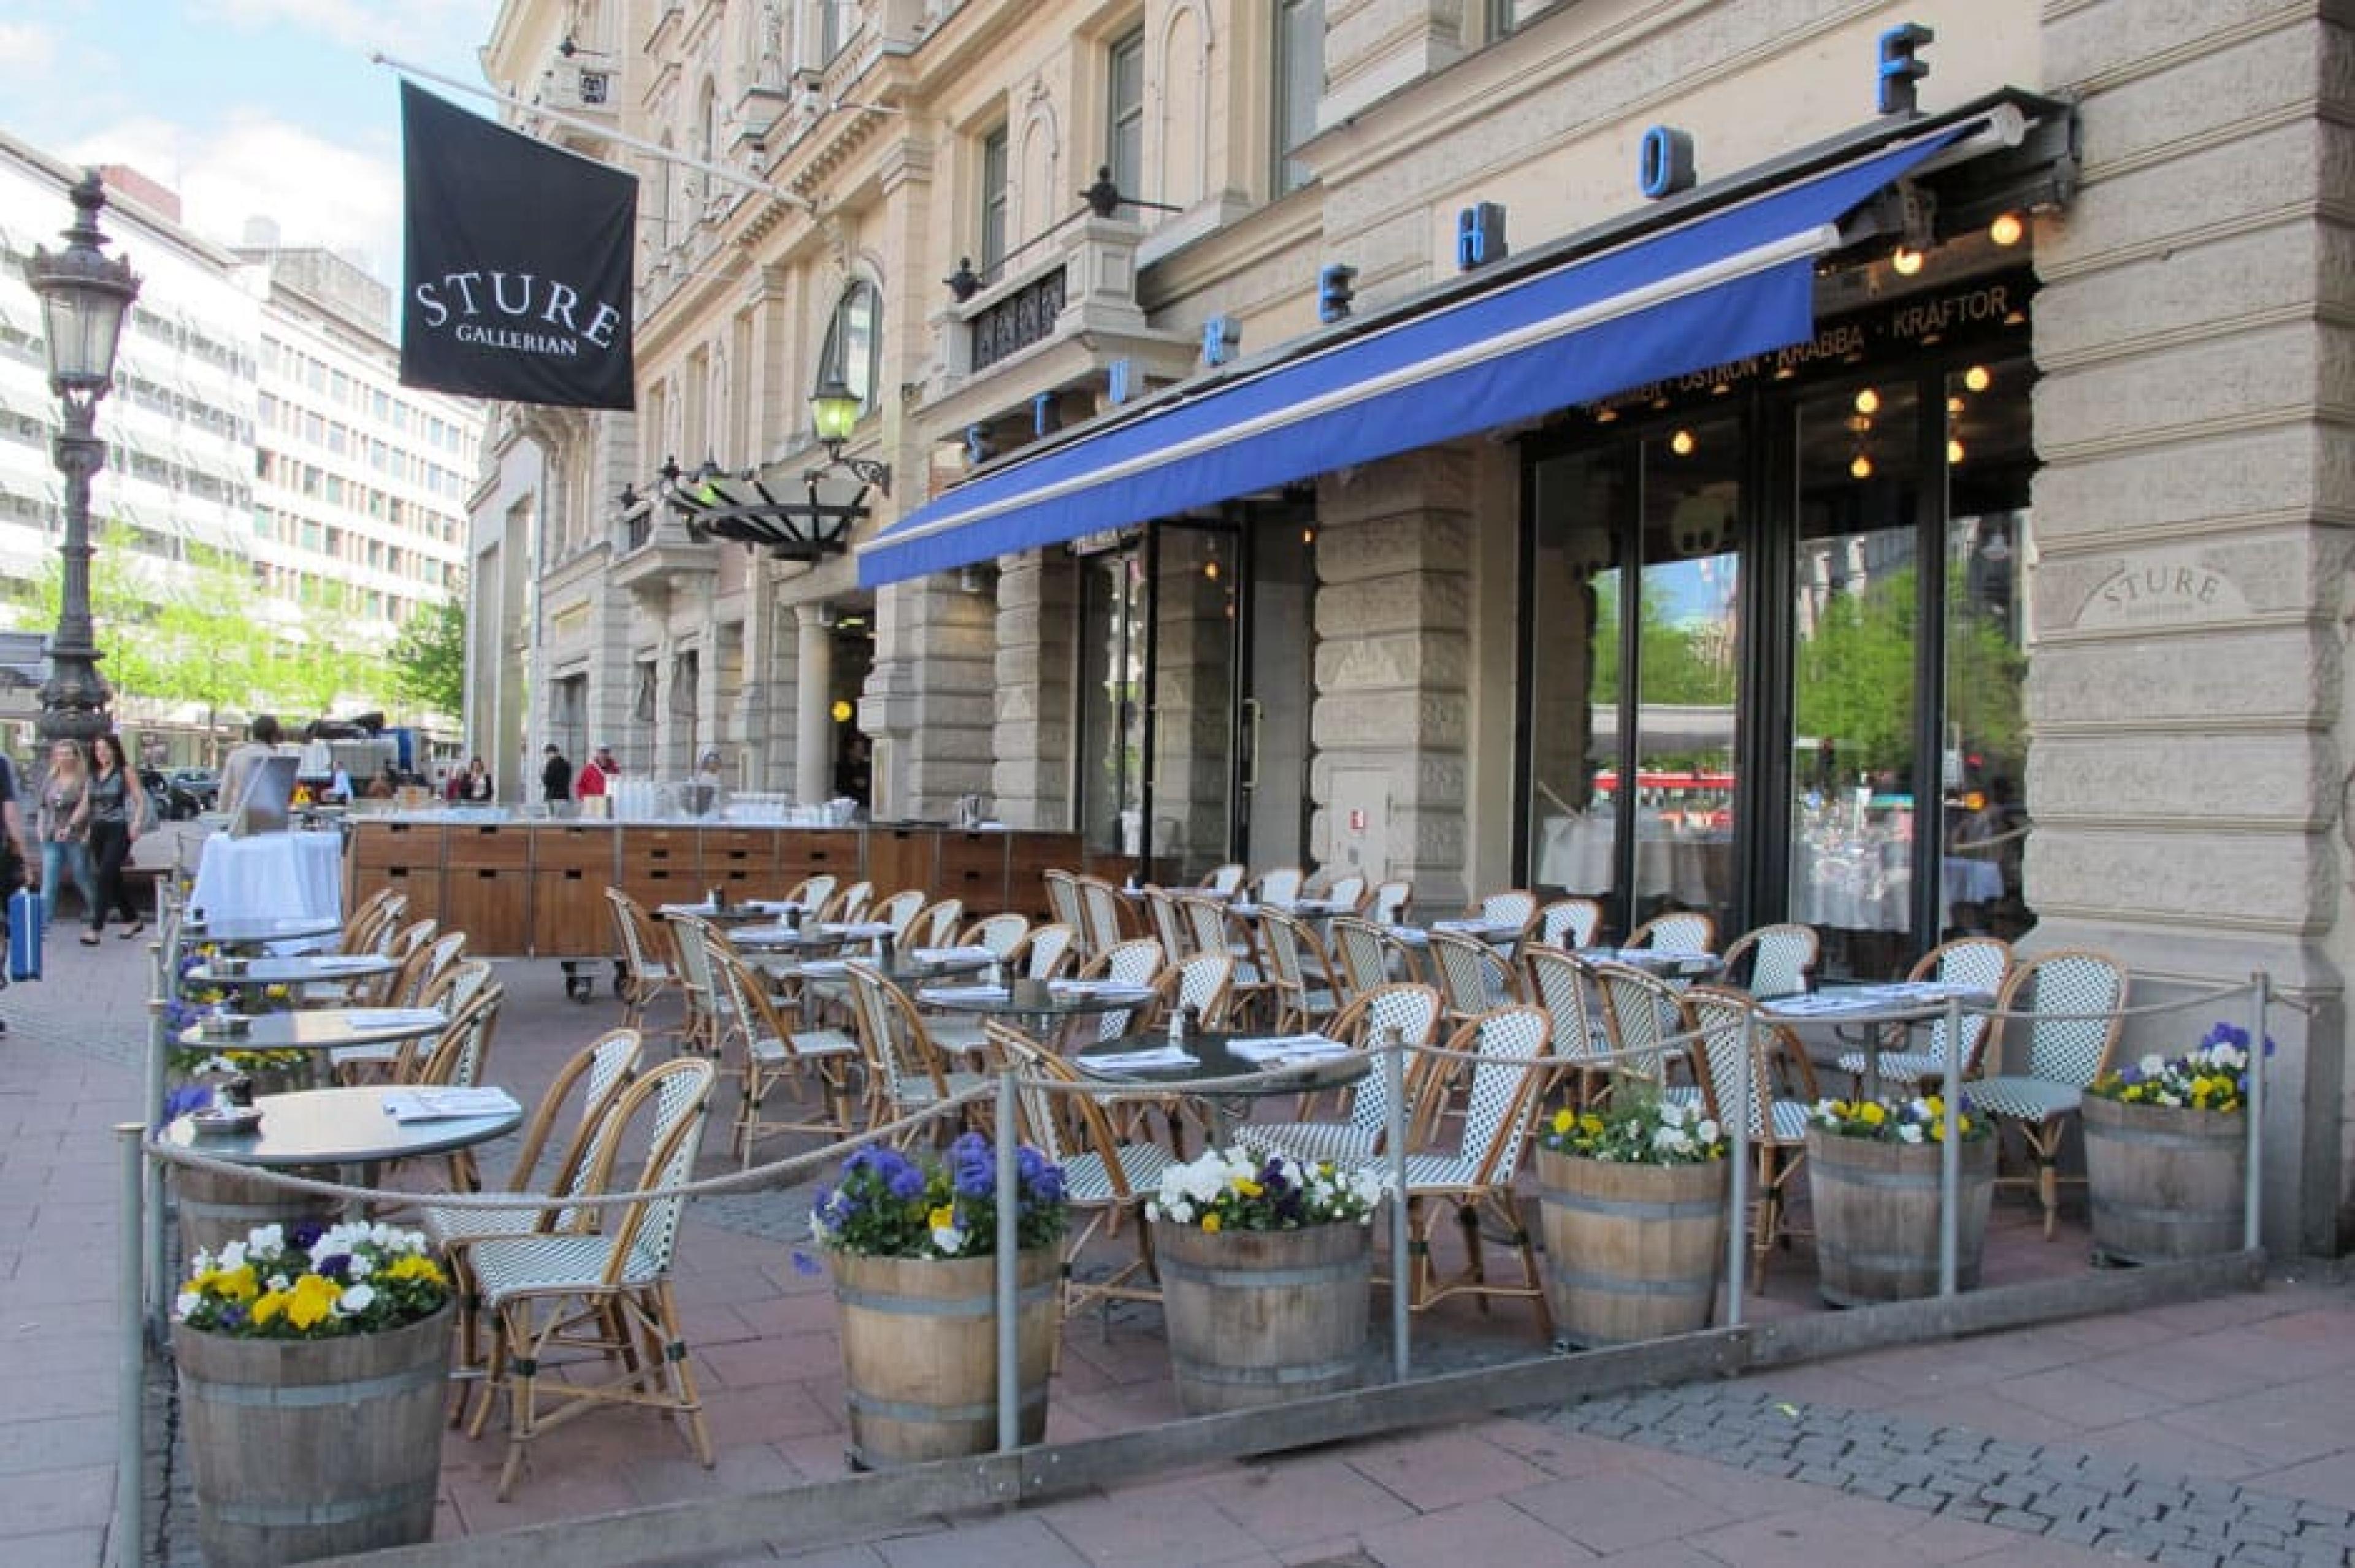 Dinning Area at Sturehof, Stockholm, Sweden - Courtesy Svenska Brasserier